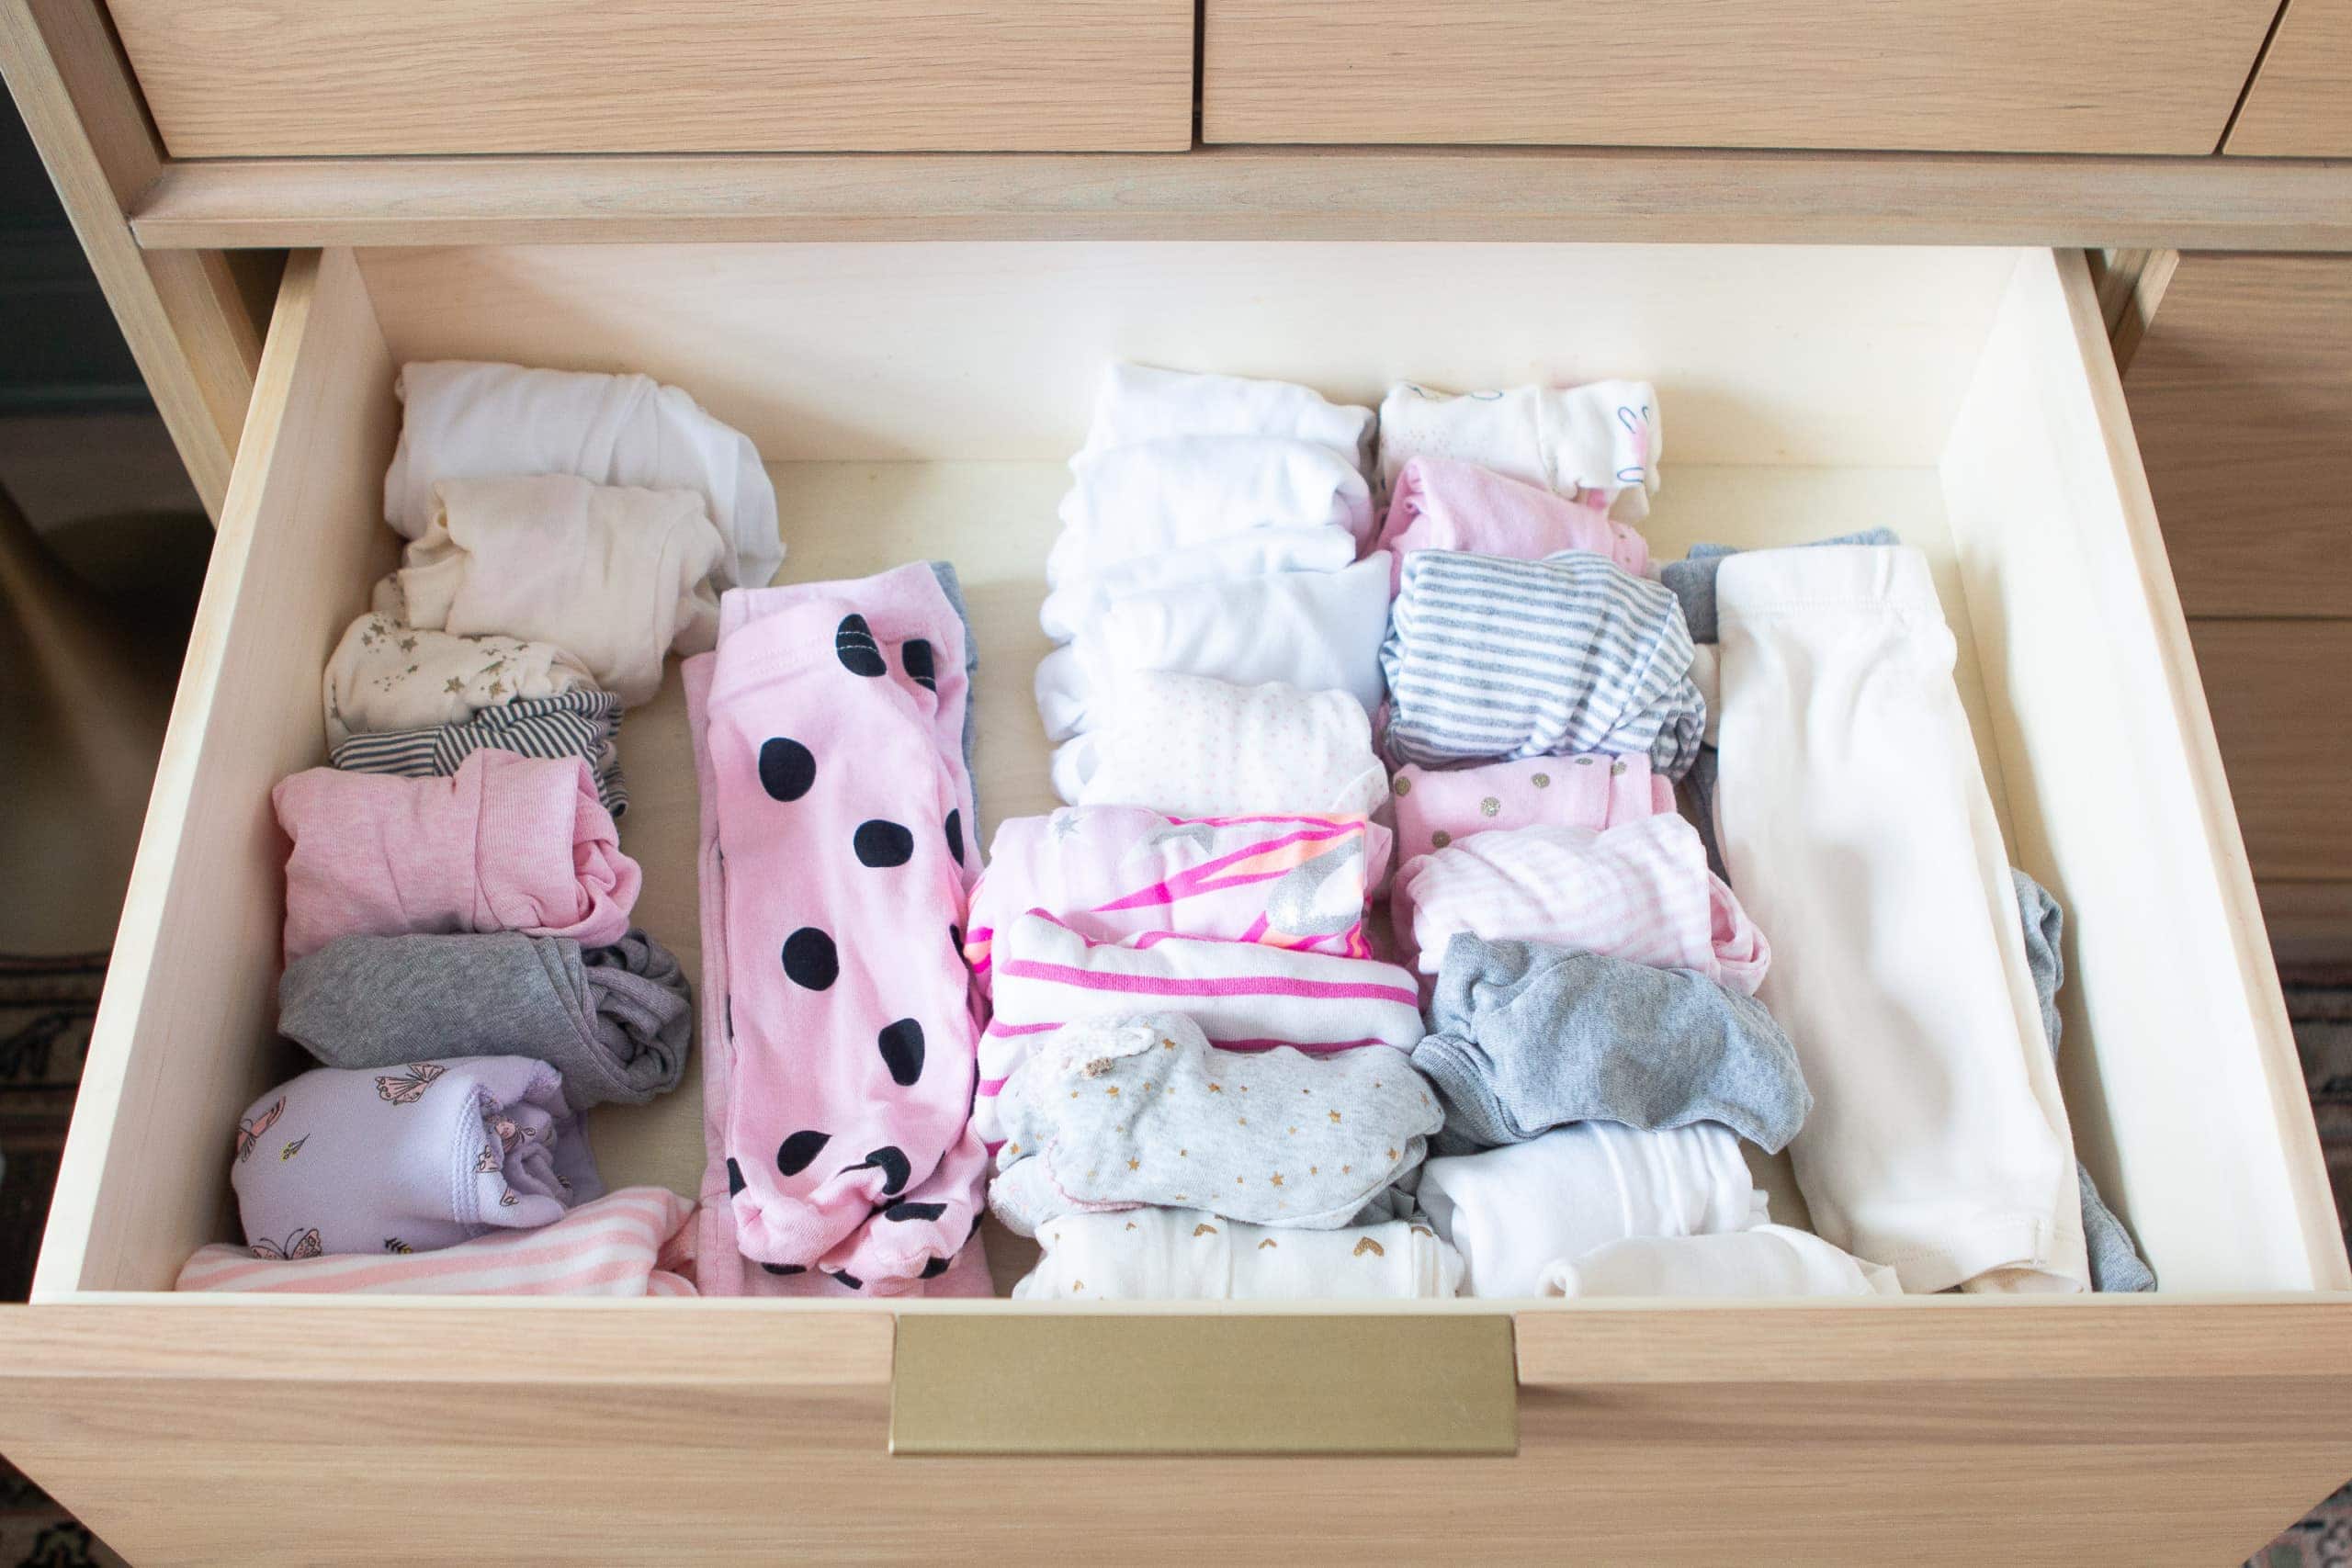 Organizing nursery drawers